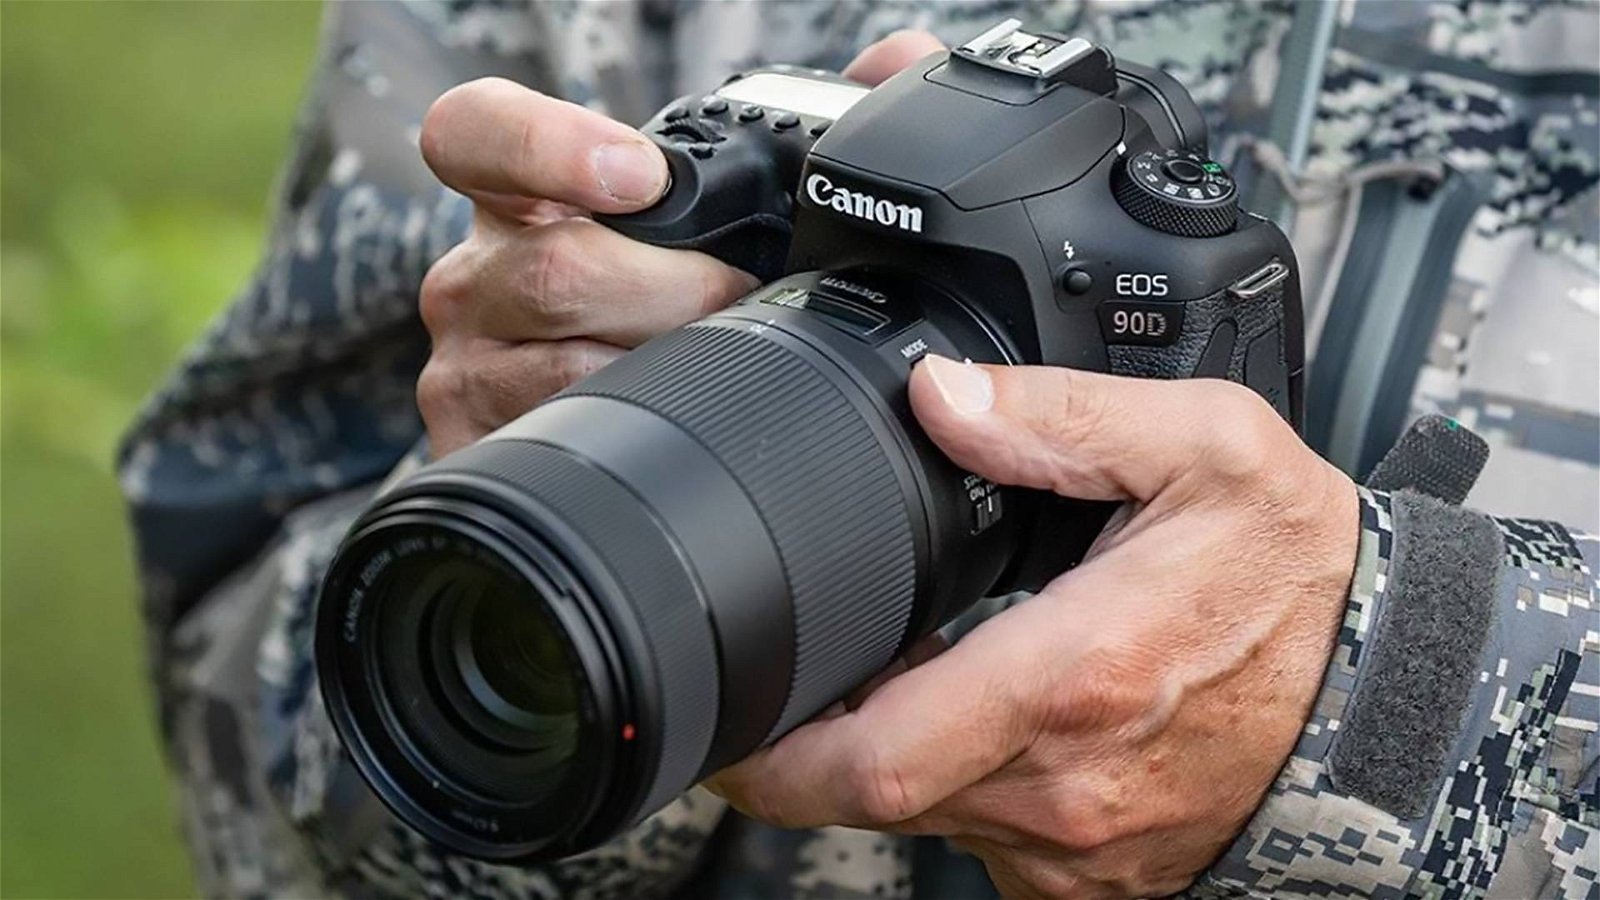 Immagine di Canon EOS 90D e M6 Mark II, reflex e mirrorless con scatto ultrarapido